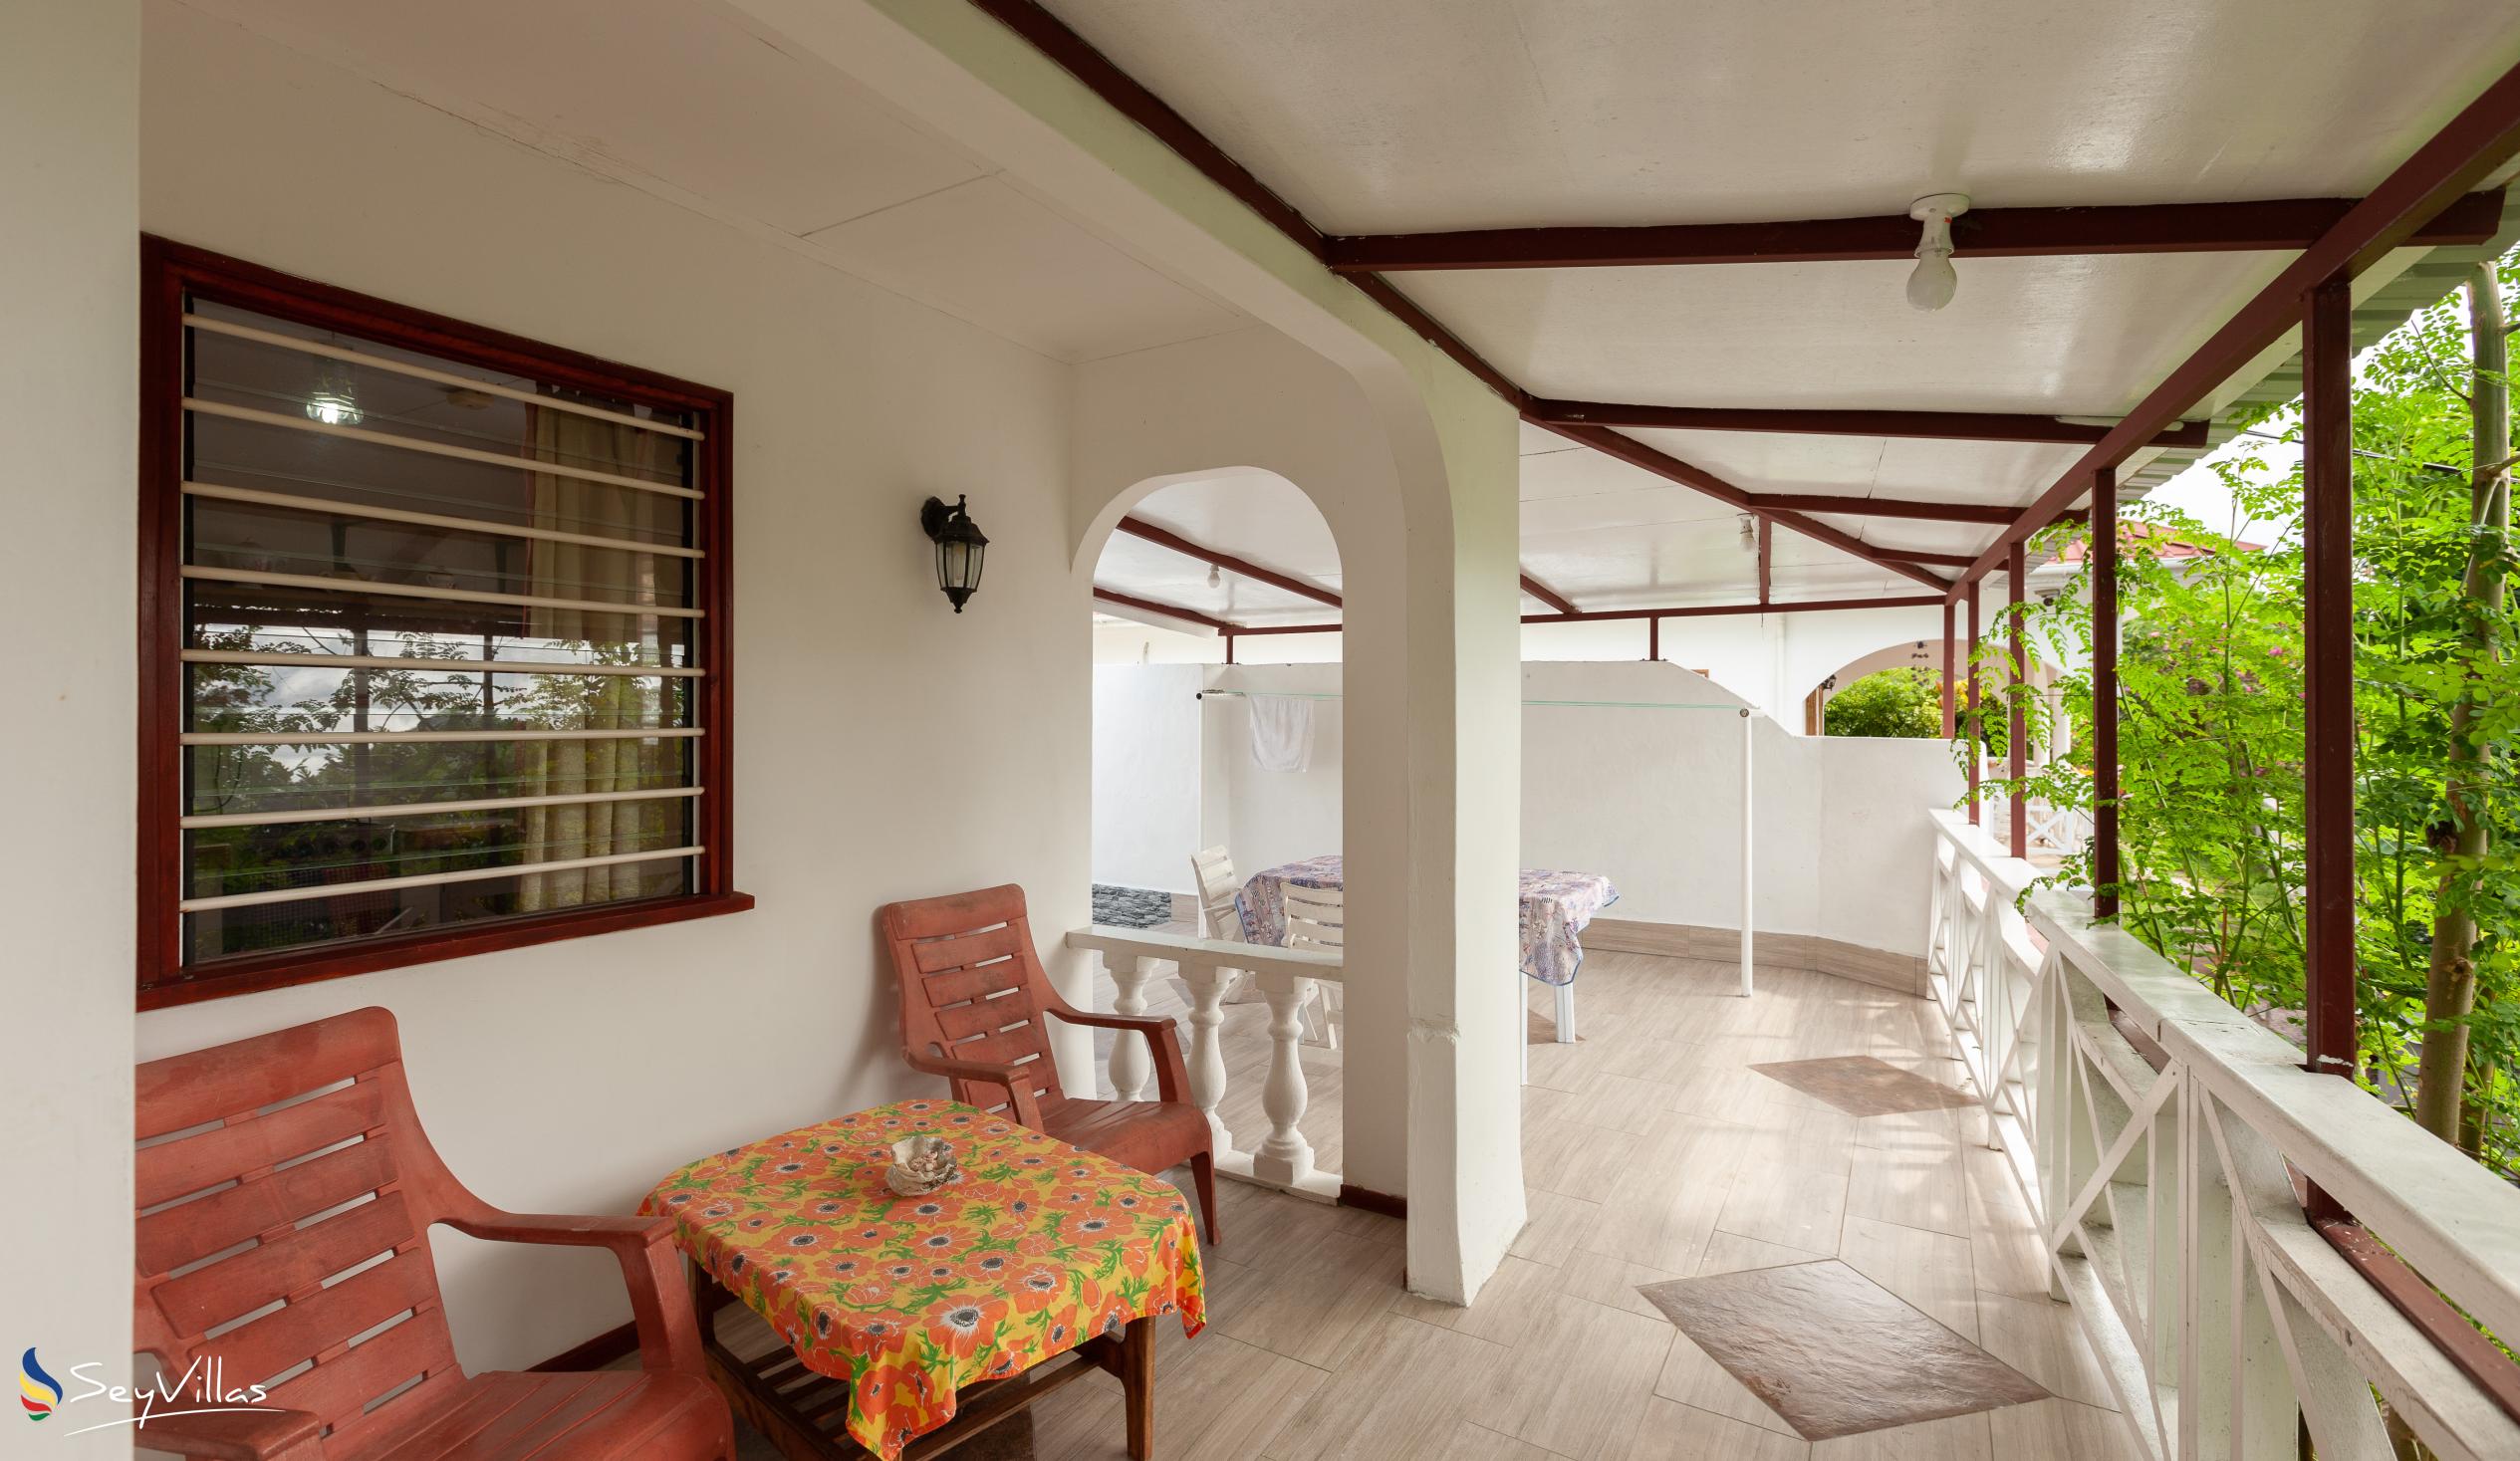 Foto 20: Baie Ste Anne Maison des Vacanze - Haus mit 1 Schlafzimmer - Praslin (Seychellen)